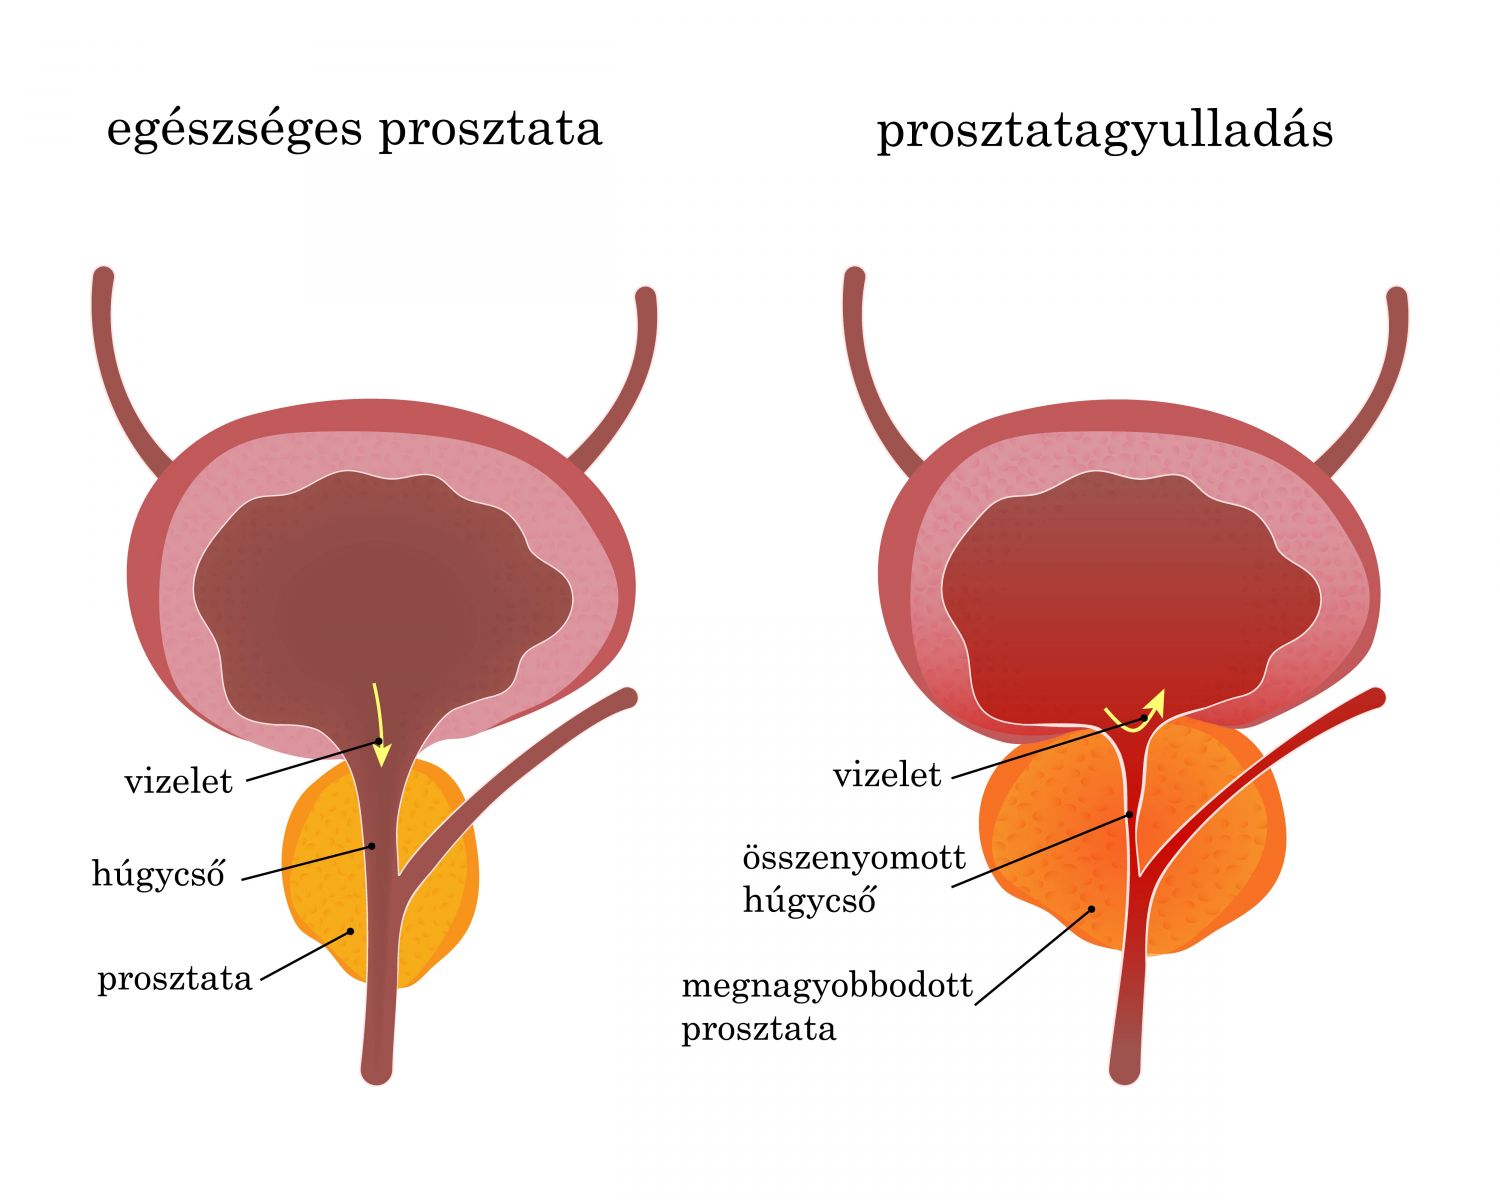 Krónikus prosztatagyulladás gyógynövényekkel történő kezelése, A prosztatagyulladás tünetei